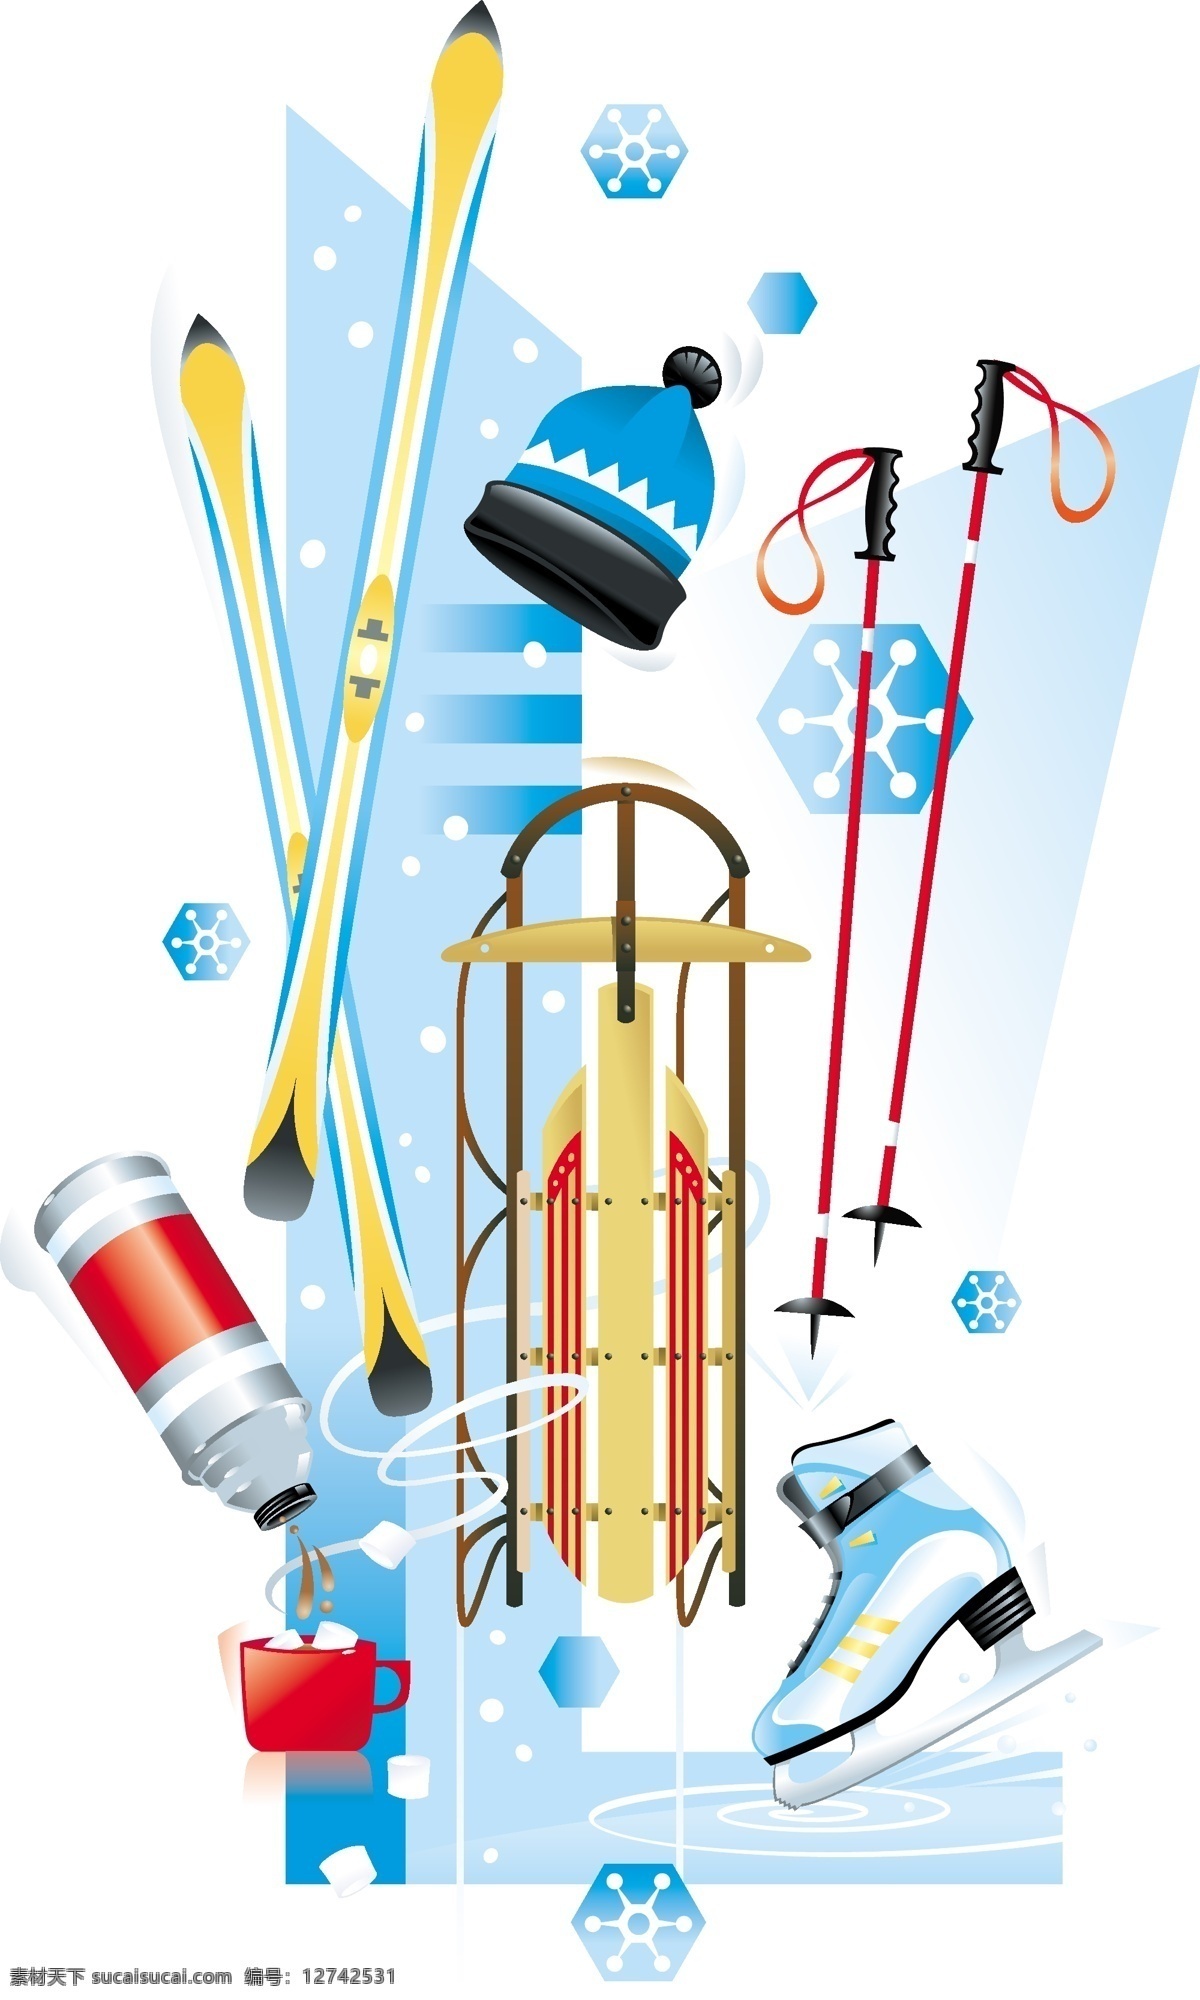 冬季 体育用品 滑雪板 帽子 水杯 水壶 体育运动 文化艺术 雪花 冬季体育用品 滑冰鞋 滑雪车 滑雪杆 矢量 淘宝素材 淘宝冬季促销